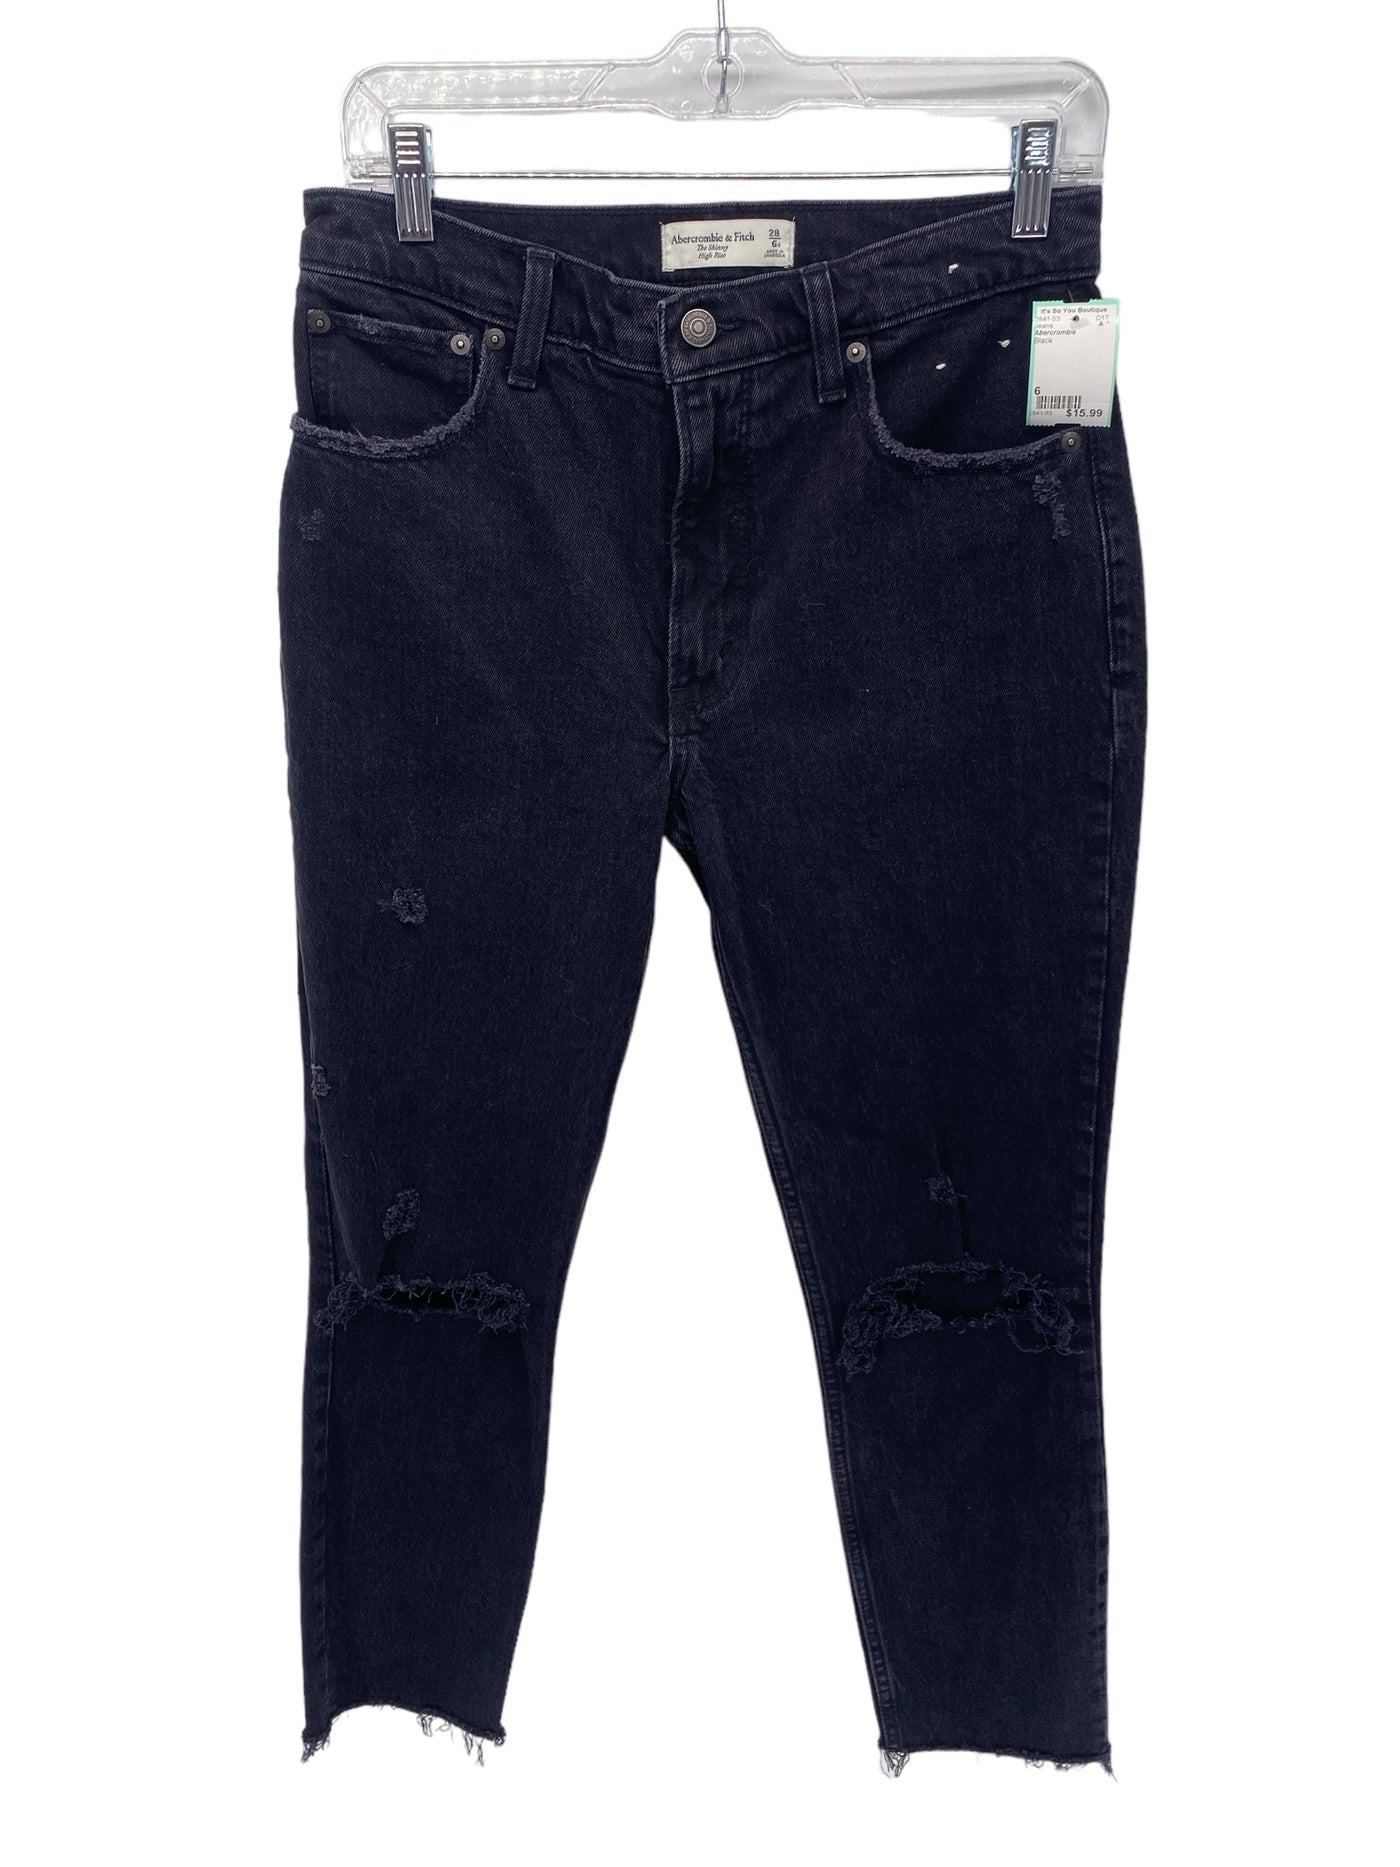 Abercrombie Misses Size 6 Black Jeans